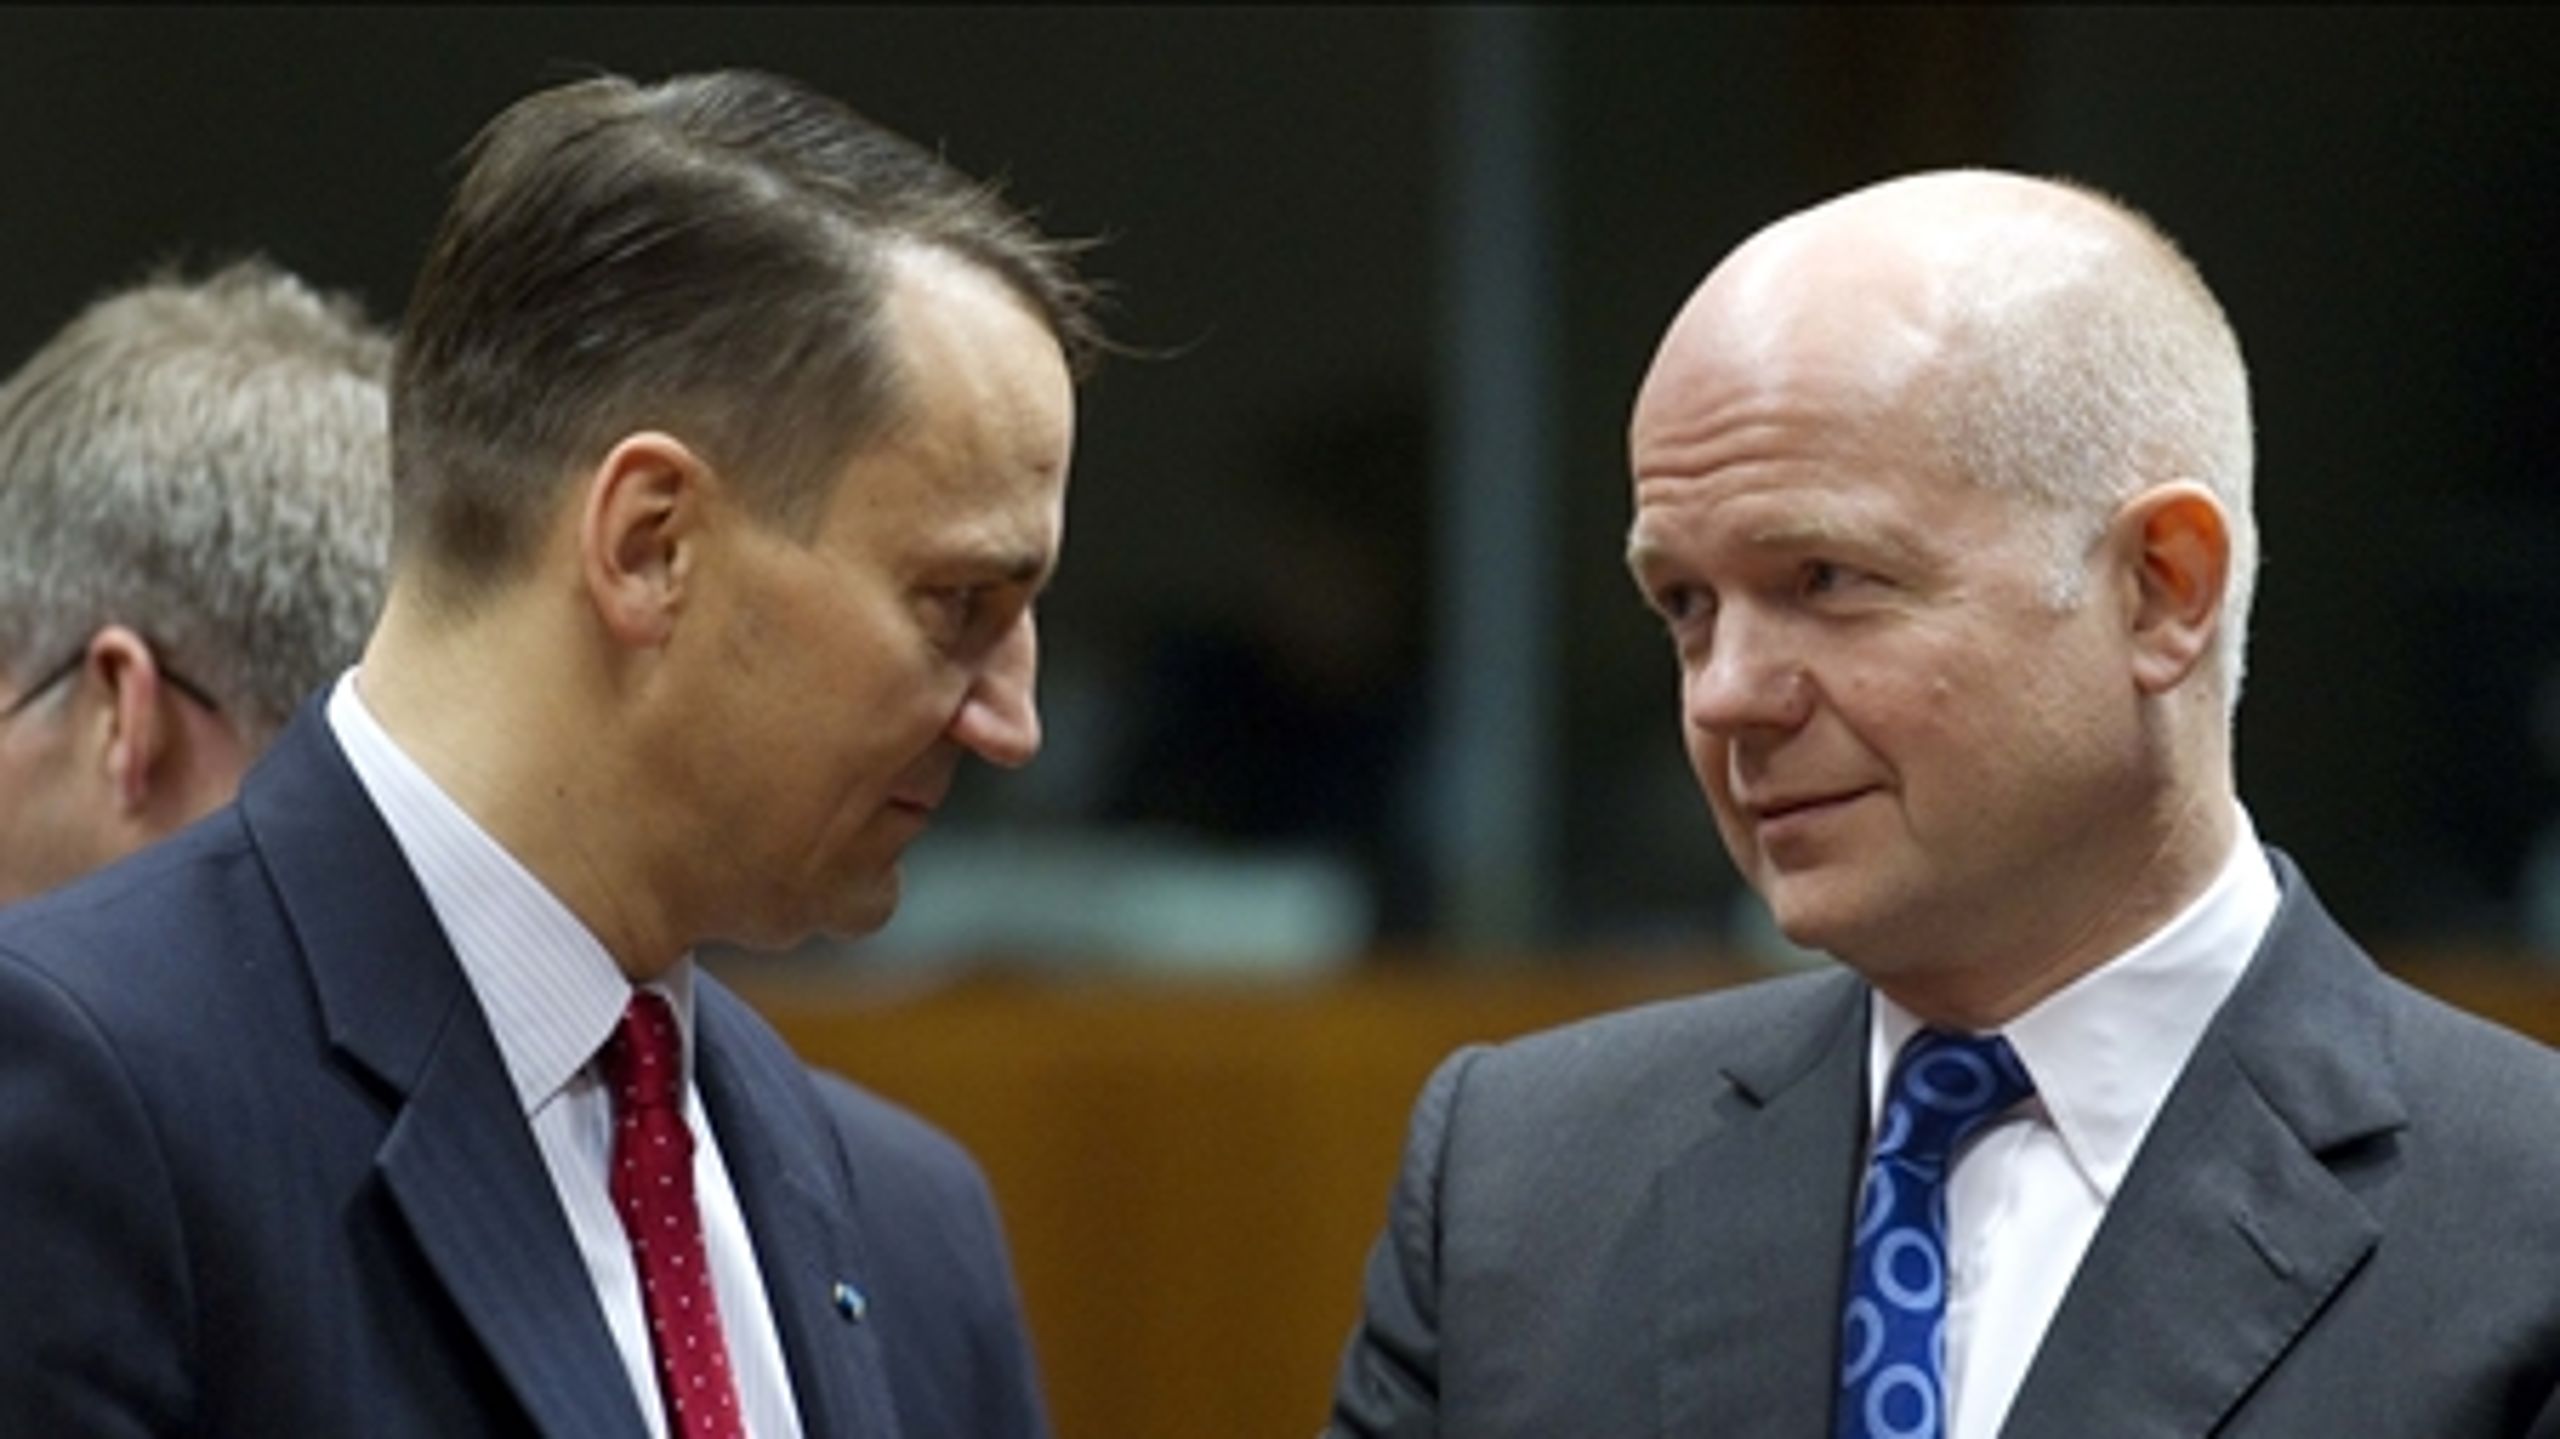 Den polske udenrigsminister Radoslaw Sikorski (t.v.) i samtale med sin britiske kollega William Hague (t.h.). De to står på hver sin side af velfærdsturismedebatten.